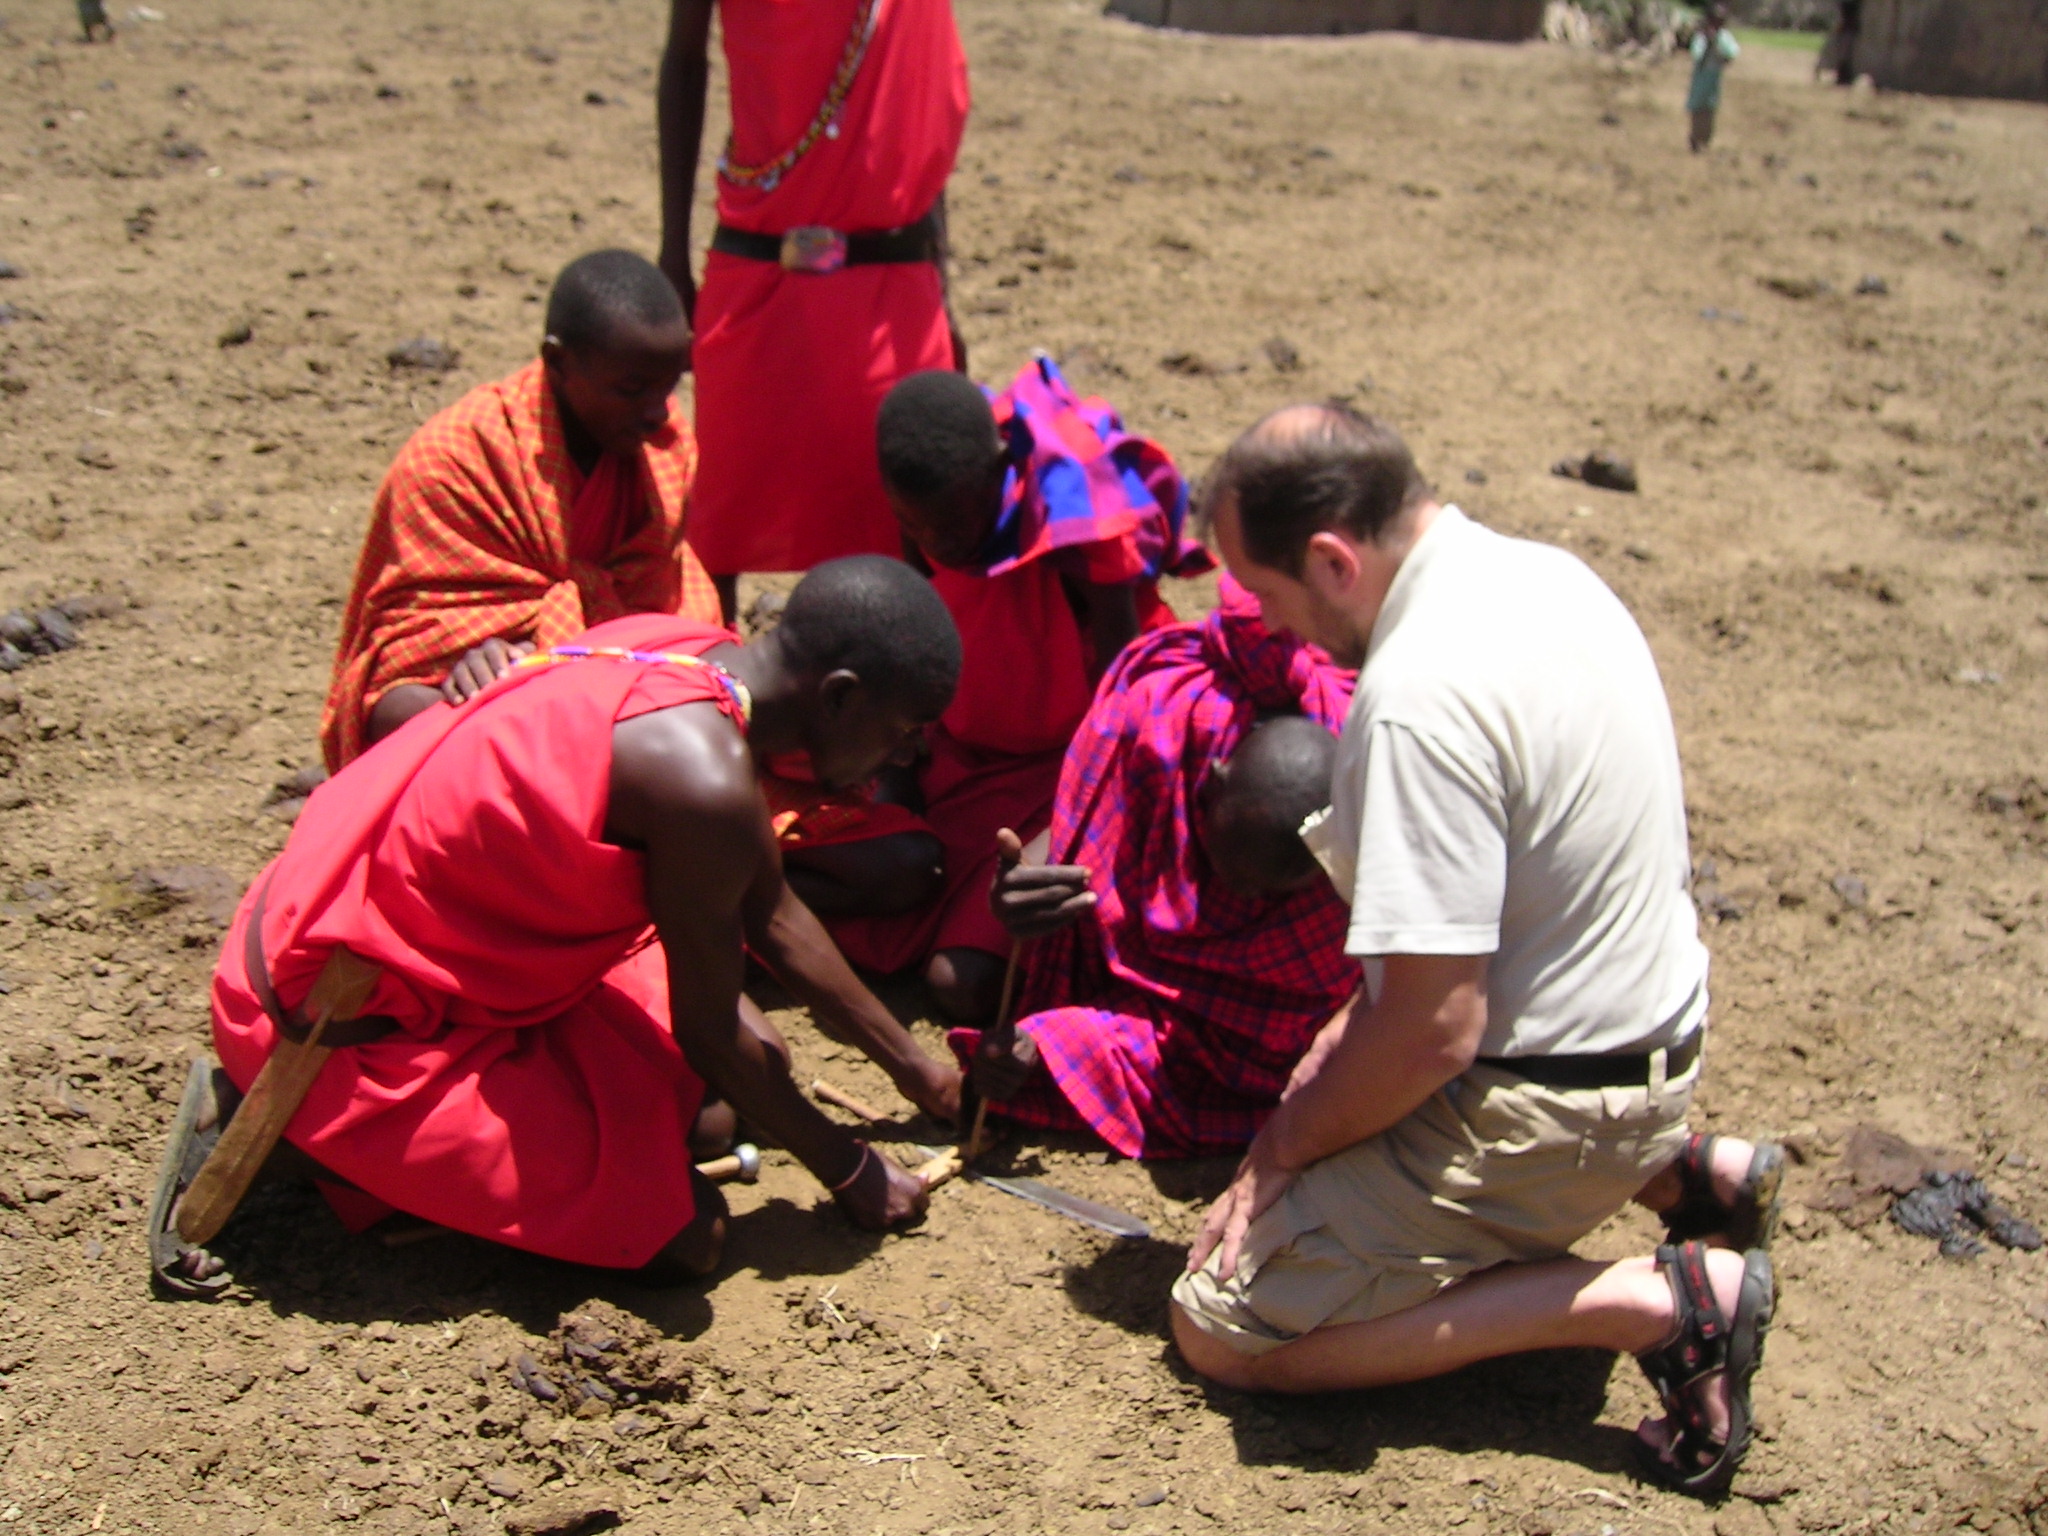 Masaju ciltī jāmācās prasme iegūt  uguni bez sērkociņiem